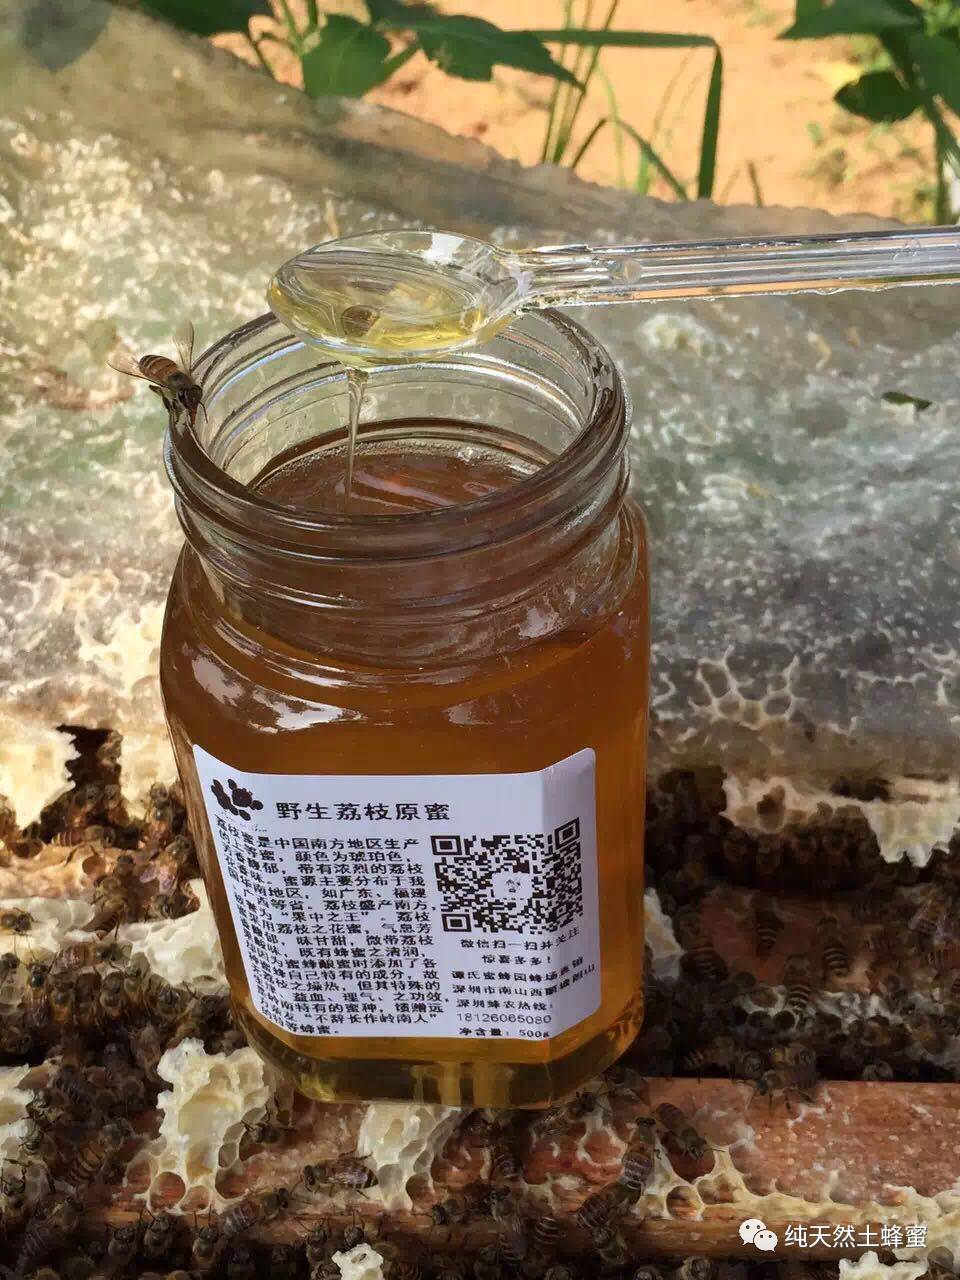 深加工技术 蜂蜜咖啡 蜂蜜 蜂蜜祛痘法 蜜蜂病害